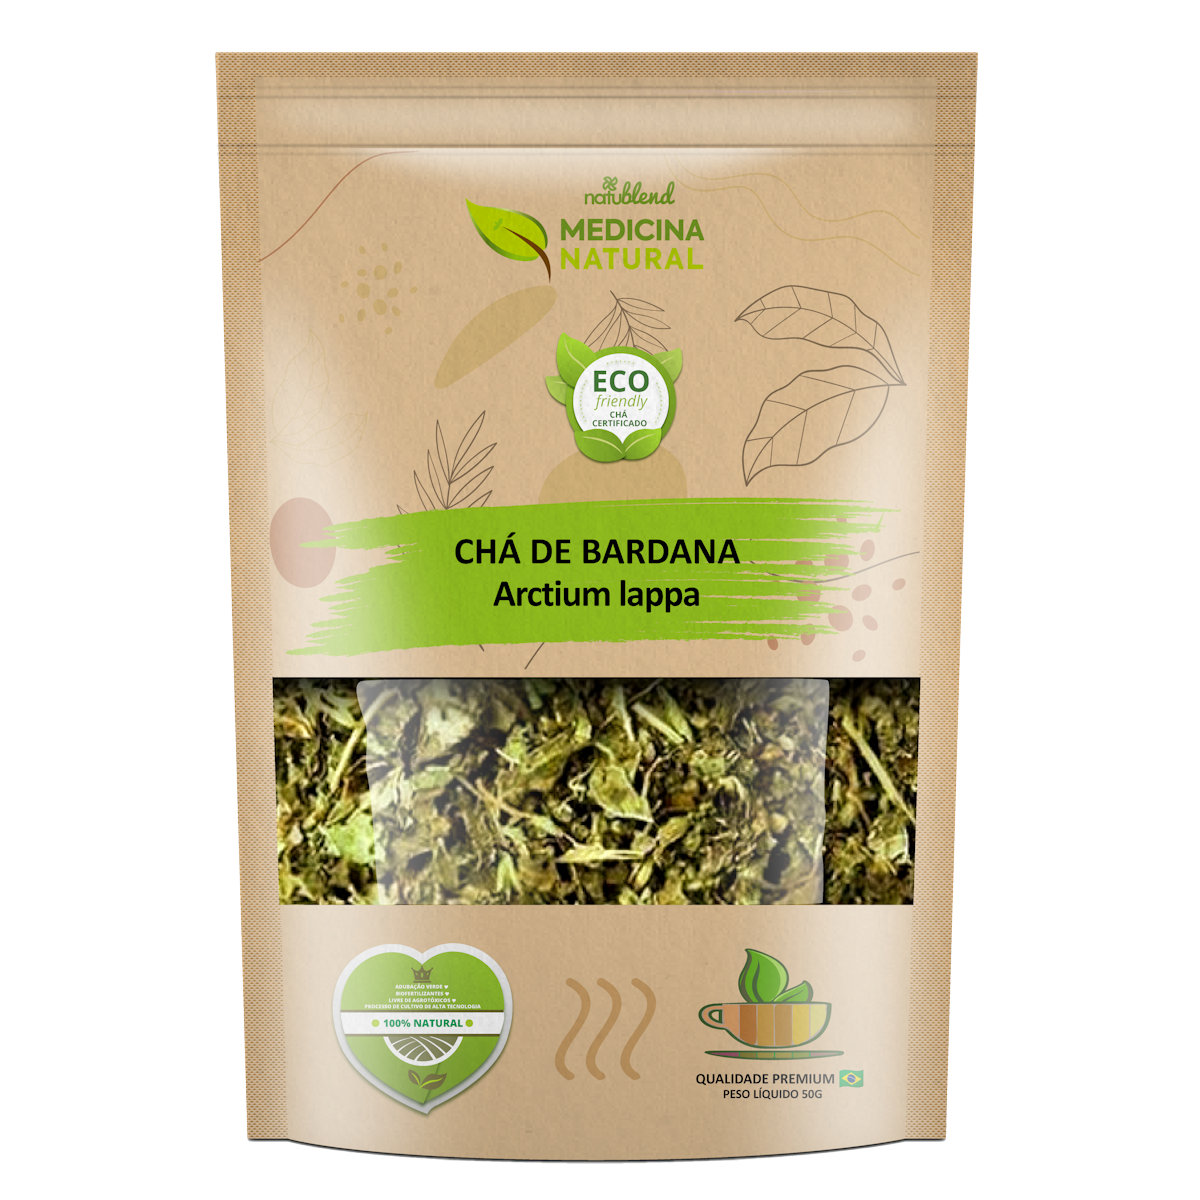 Chá de Bardana - Arctium lappa - Medicina Natural